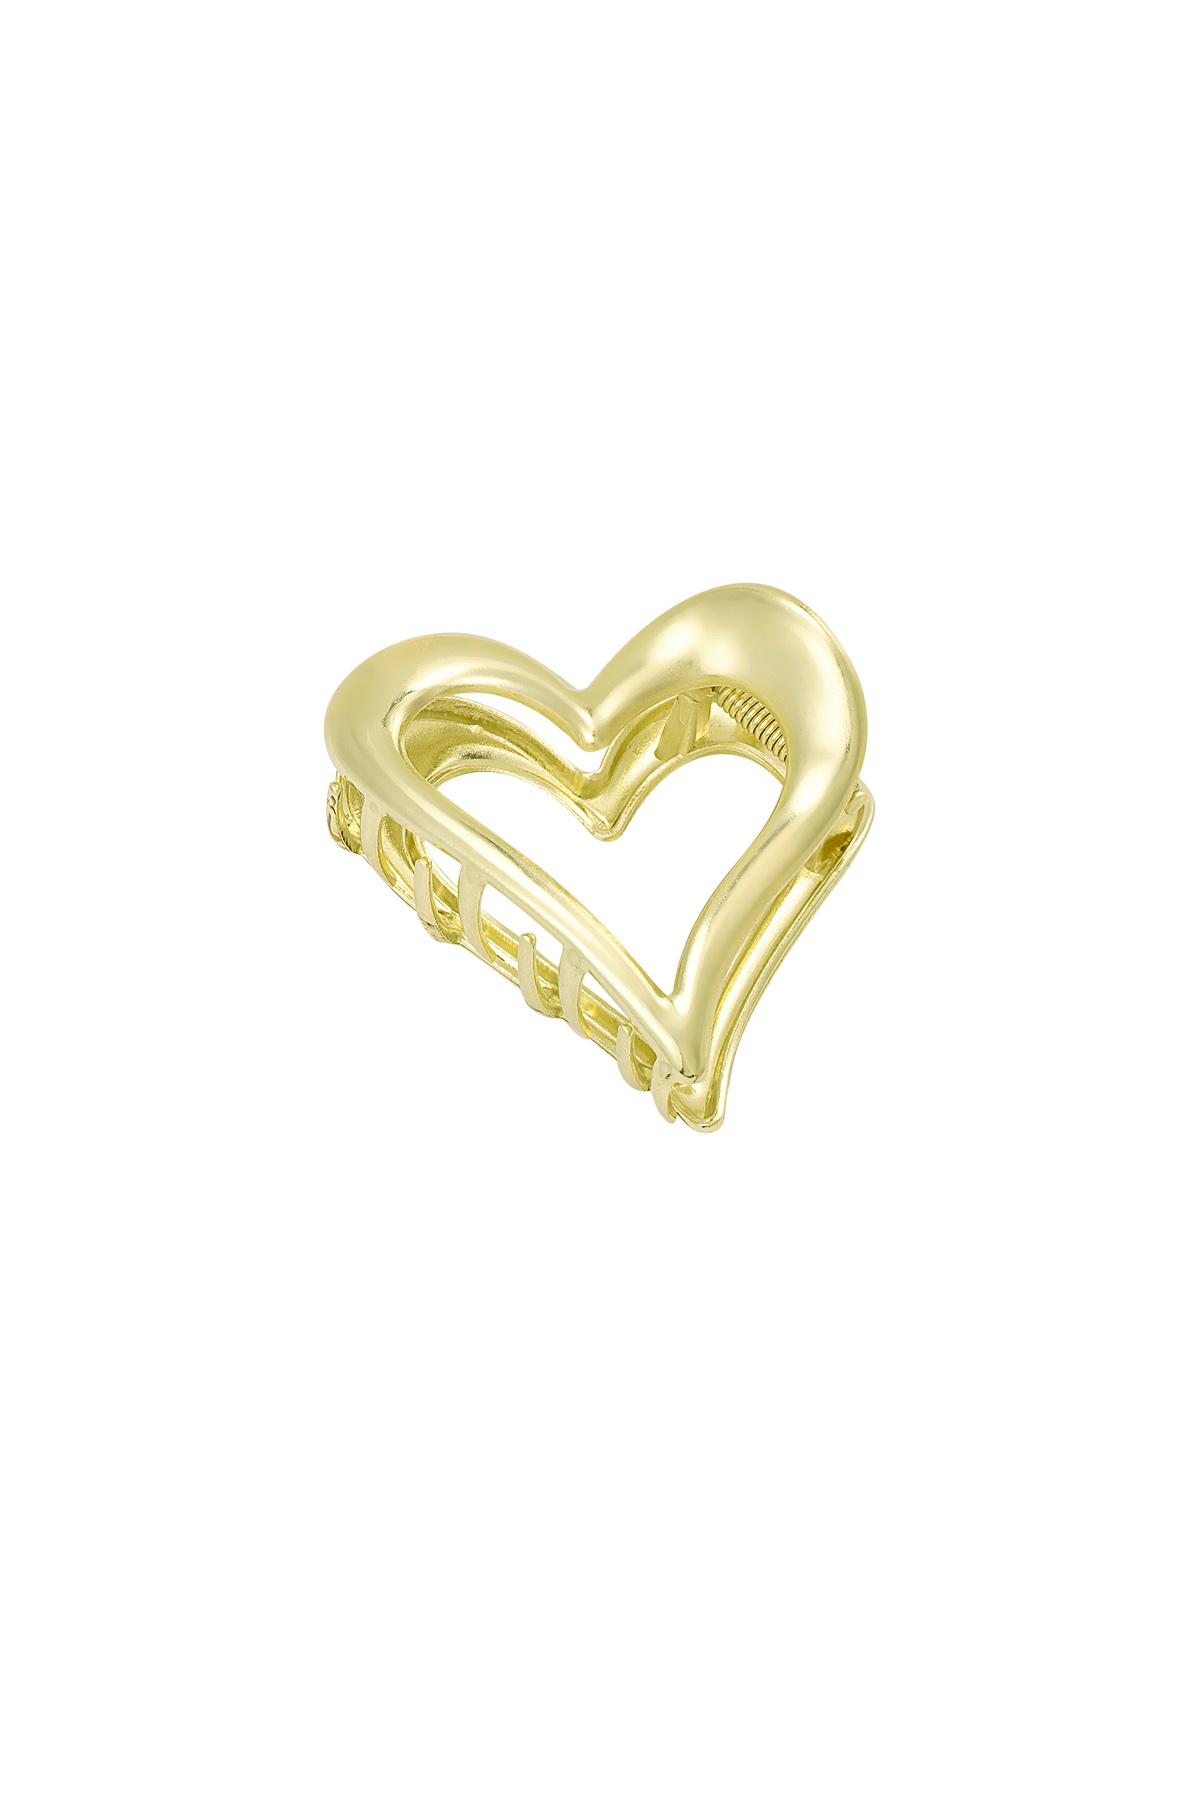 Gold heart hair clip